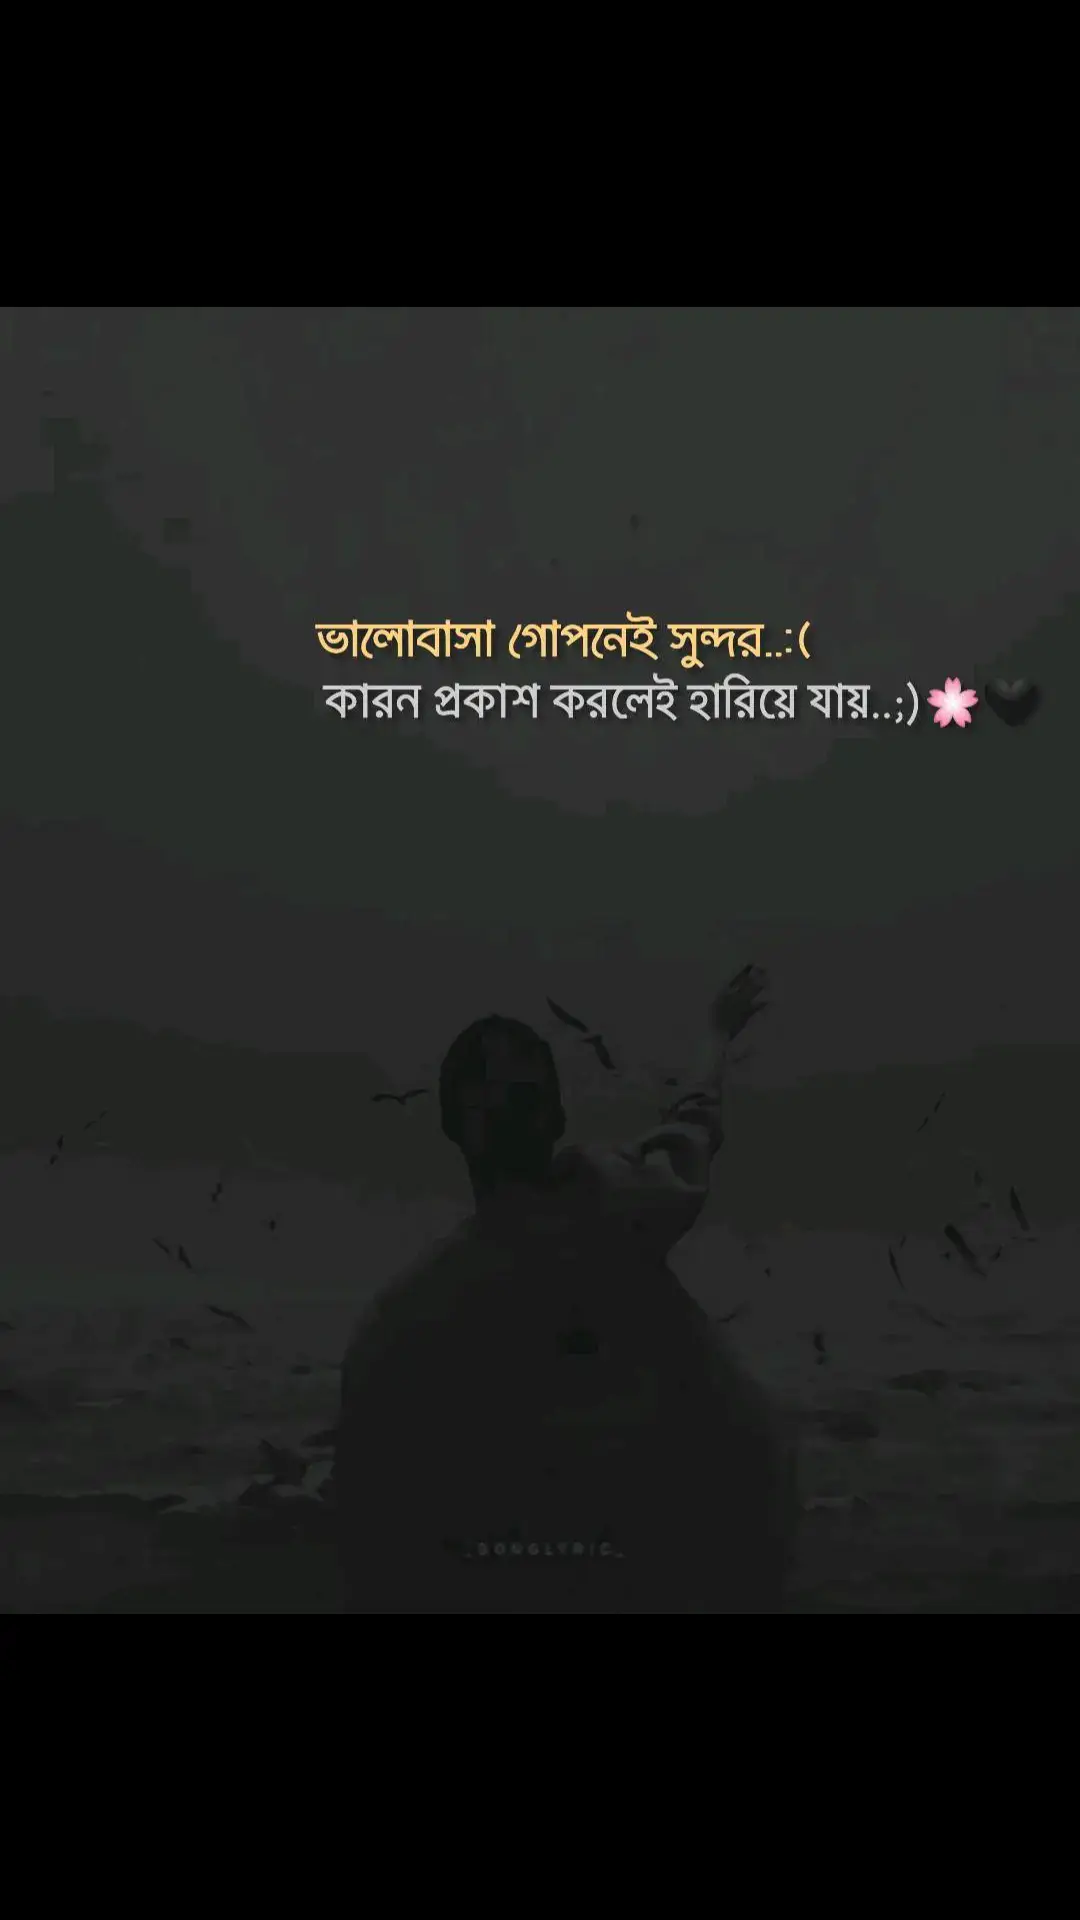 ভালোবাসা গোপনে ই সুন্দর..)!!🌸💞#foryou #foryoupage #sadstory #viral #official #trending #bdtiktokofficial #tiktokbangladesh #ইনশাআল্লাহ_যাবে_foryou_তে। 